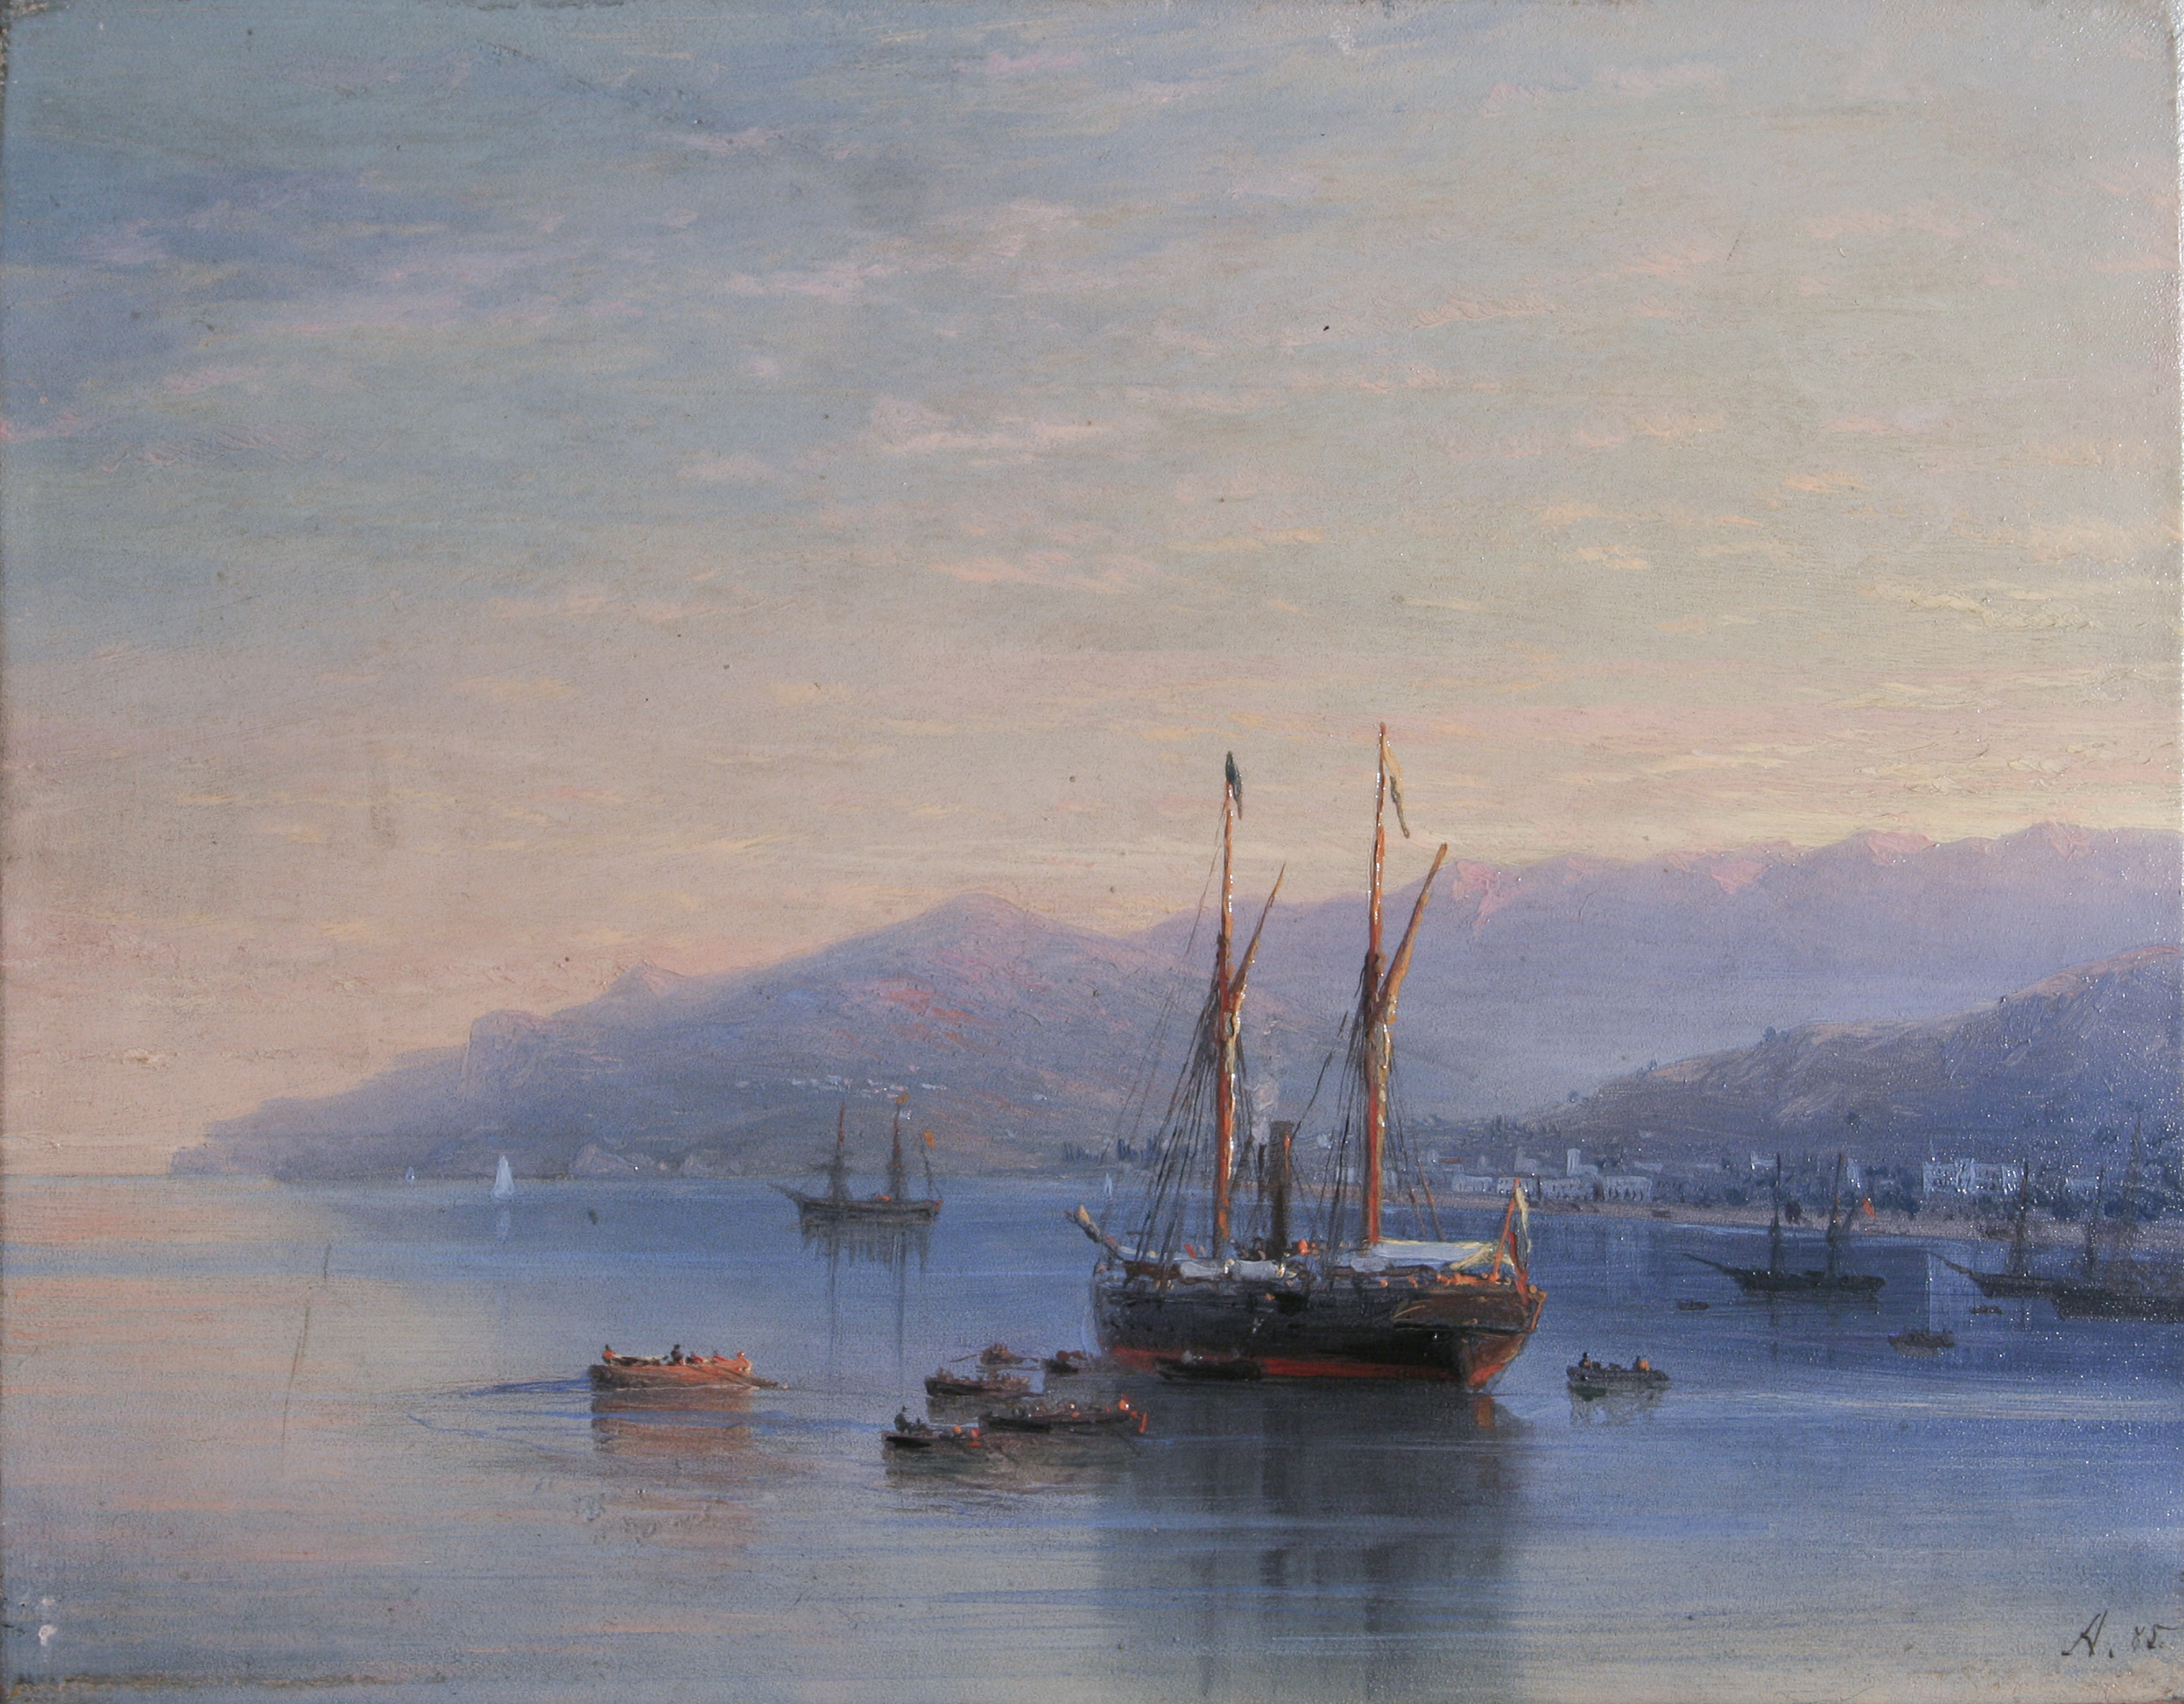 ساحل يالطا by Ivan Aivazovsky - 1864 م - 18.5 في 24 سم 